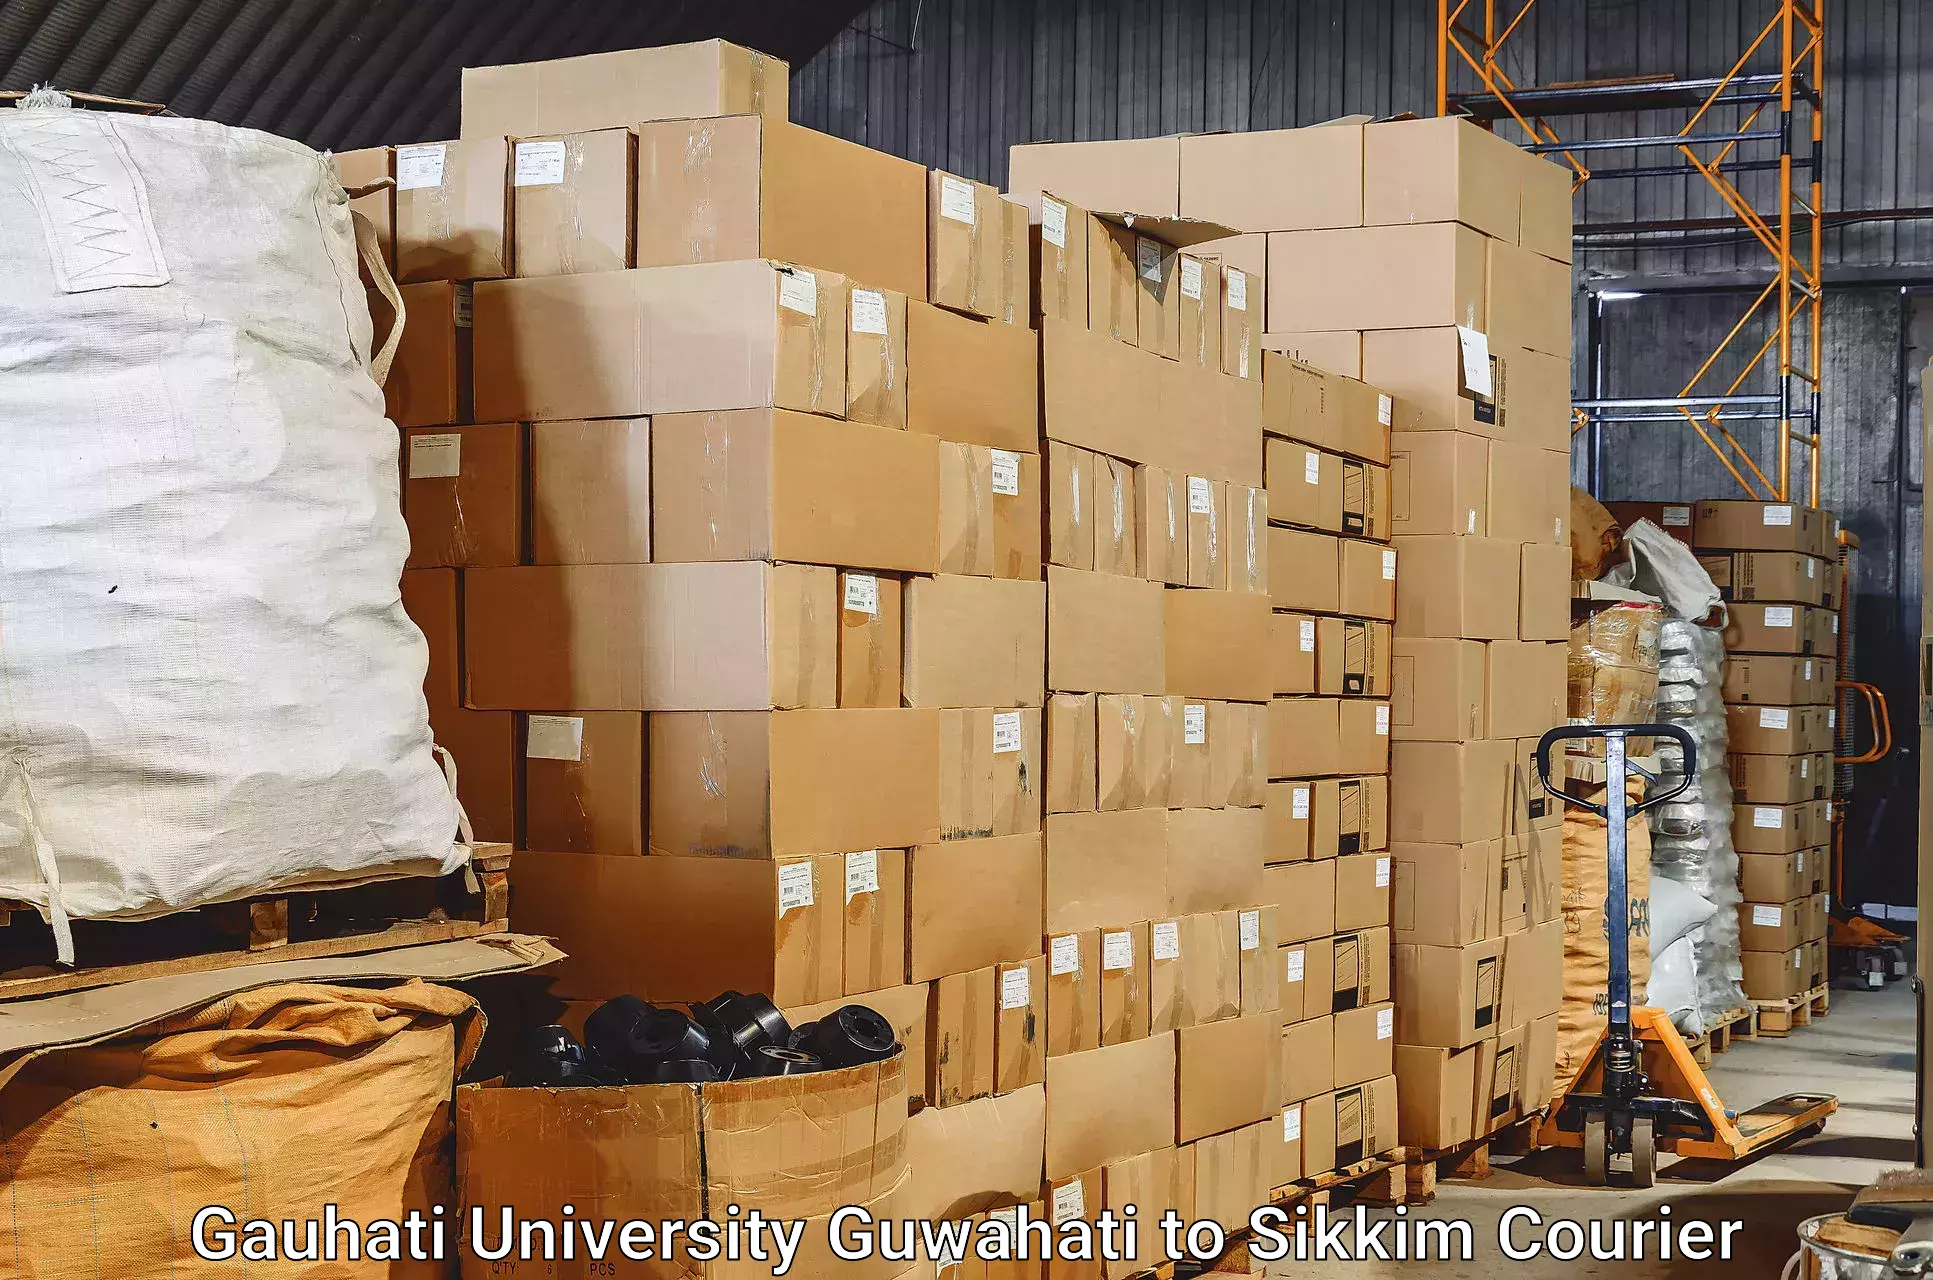 Baggage transport services Gauhati University Guwahati to Pelling